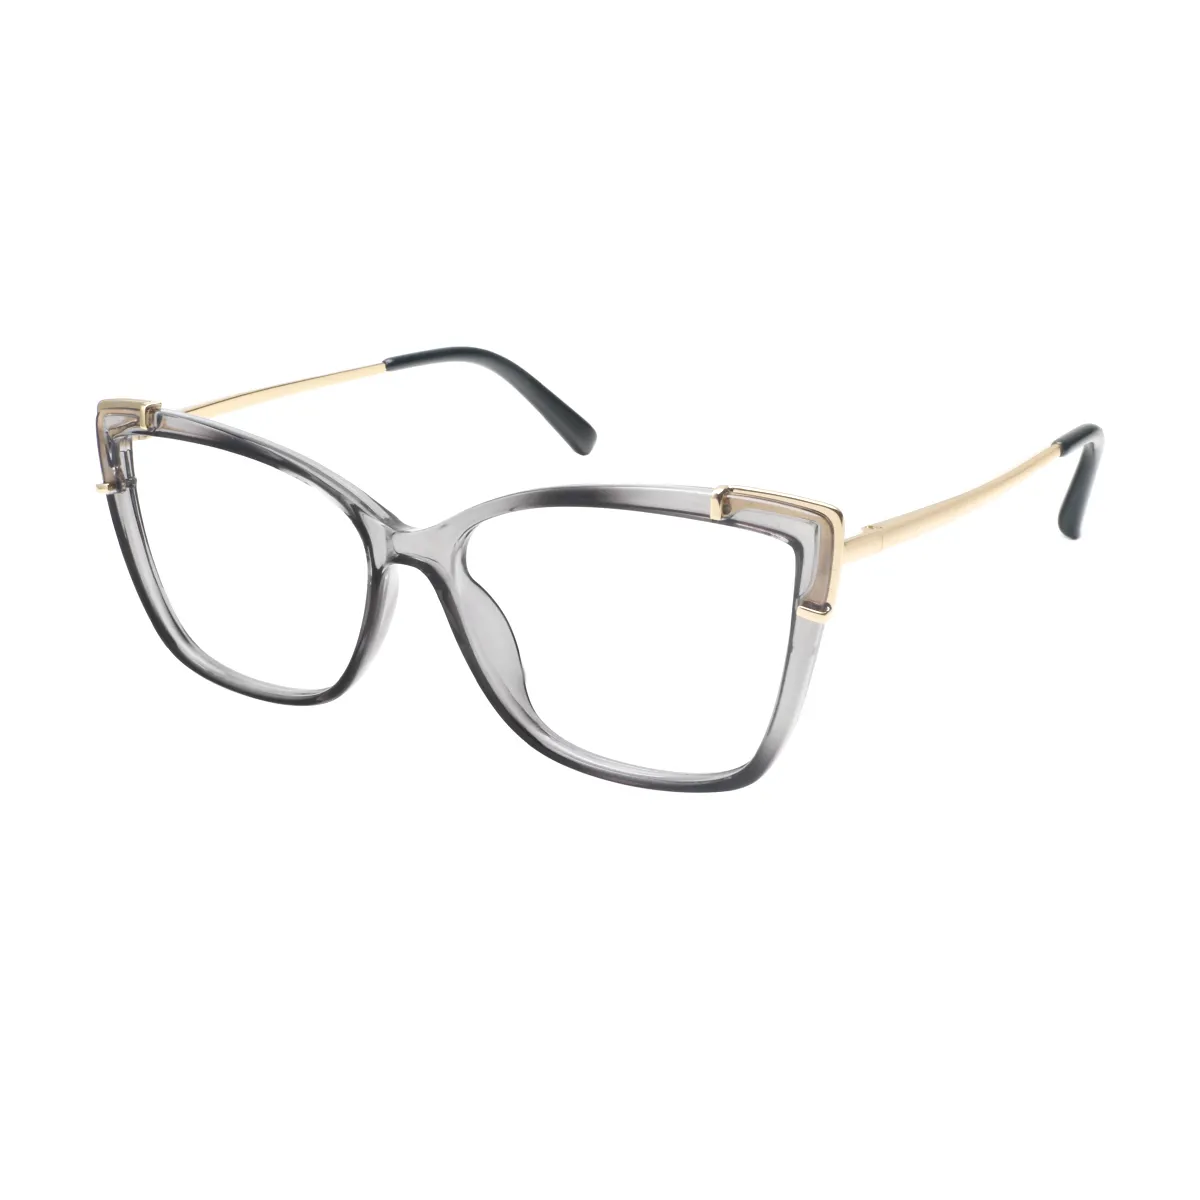 Jayne - Cat-eye Gray Glasses for Women - EFE